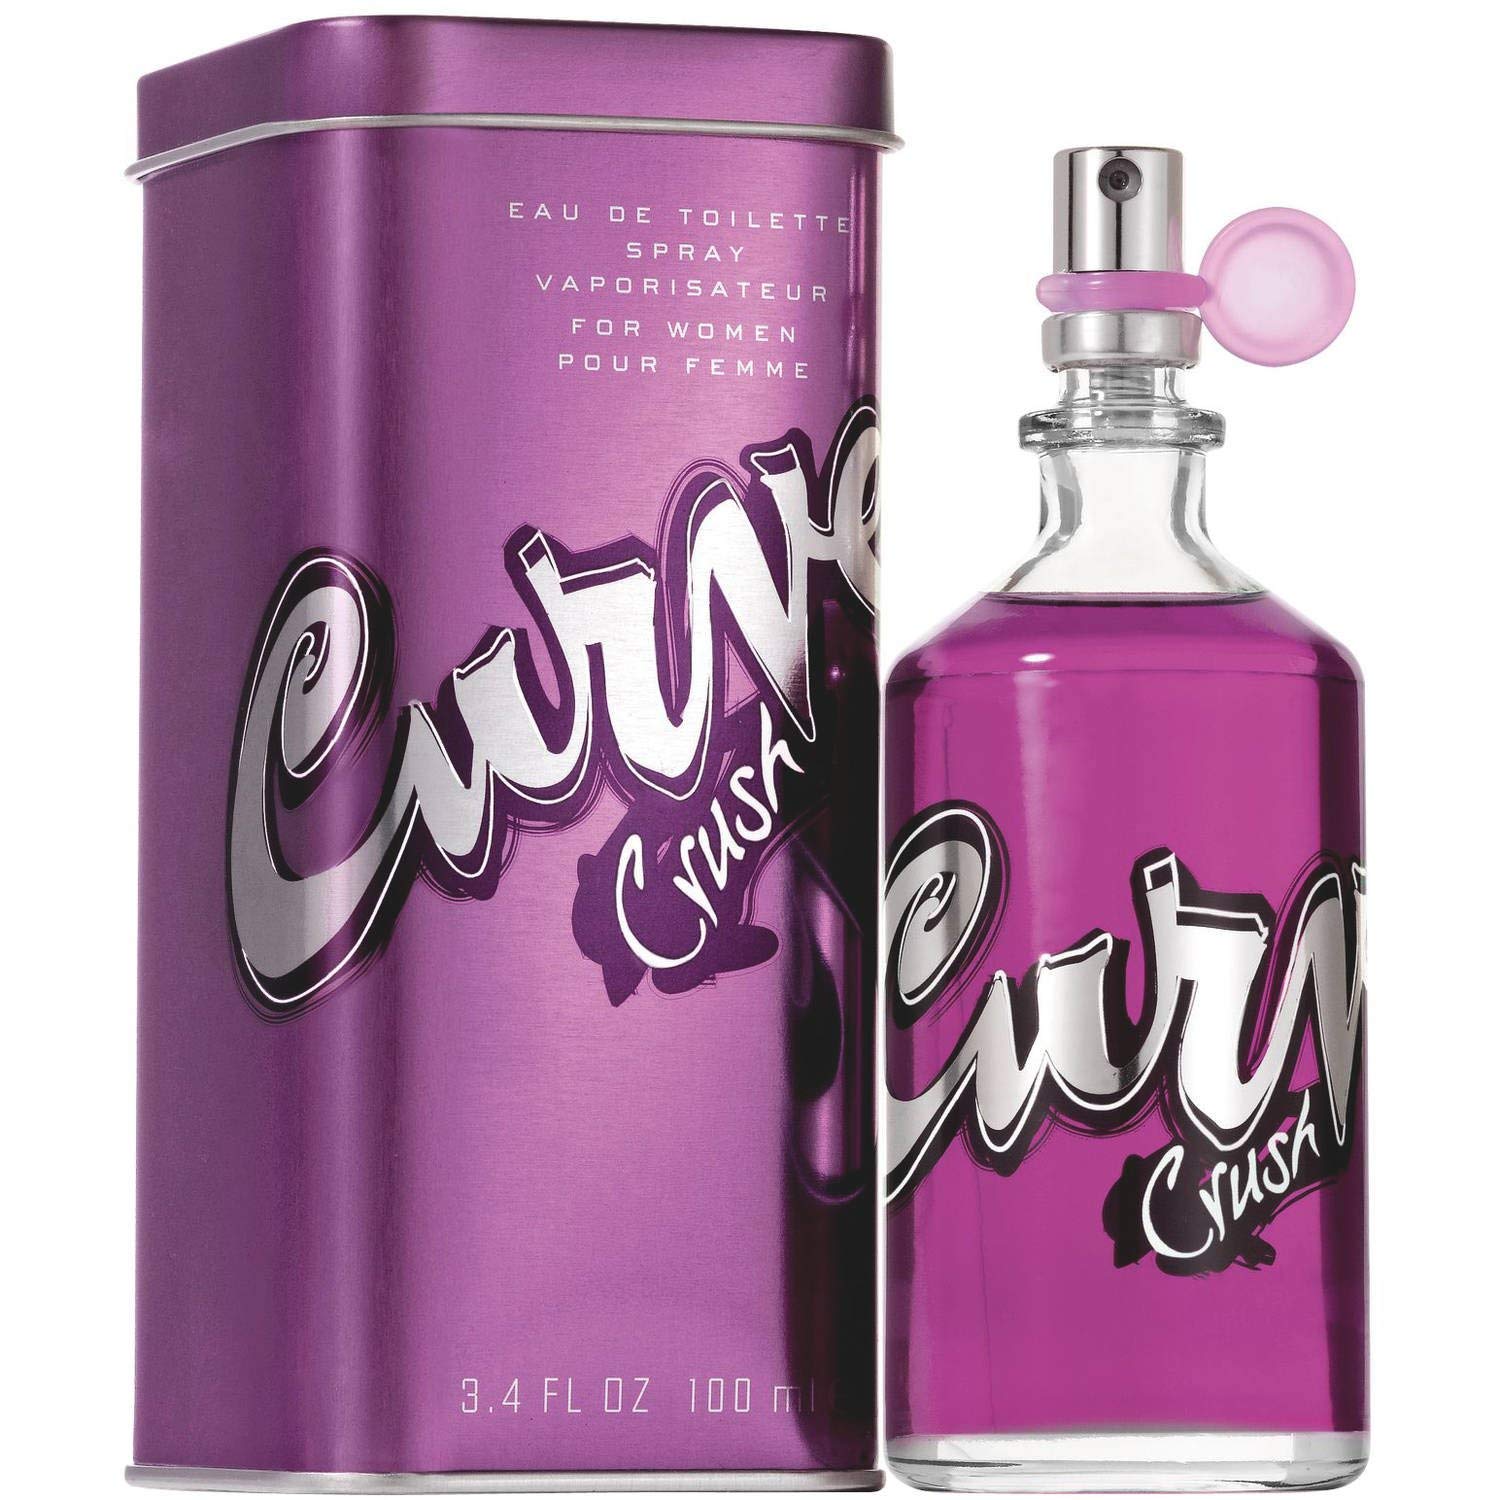 Curve Crush by Liz Claiborne 3.4 oz EDT Spray for Women